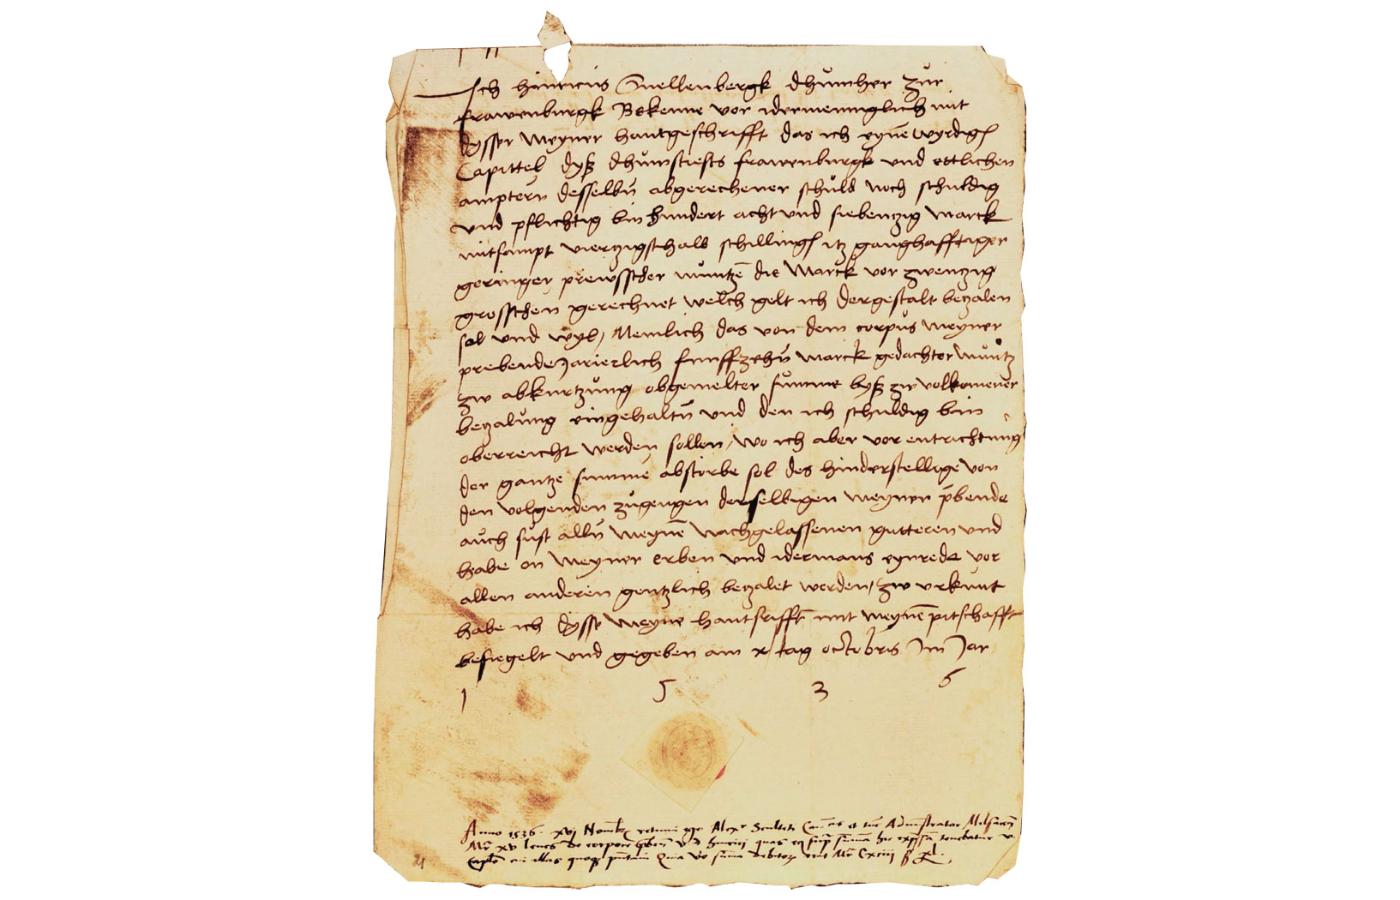 Oświadczenie kanonika warmińskiego Henryka Snellenberga, że jest winien kapitule ponad 178 grzywien i zobowiązuje się do ich spłaty, 1536 r.